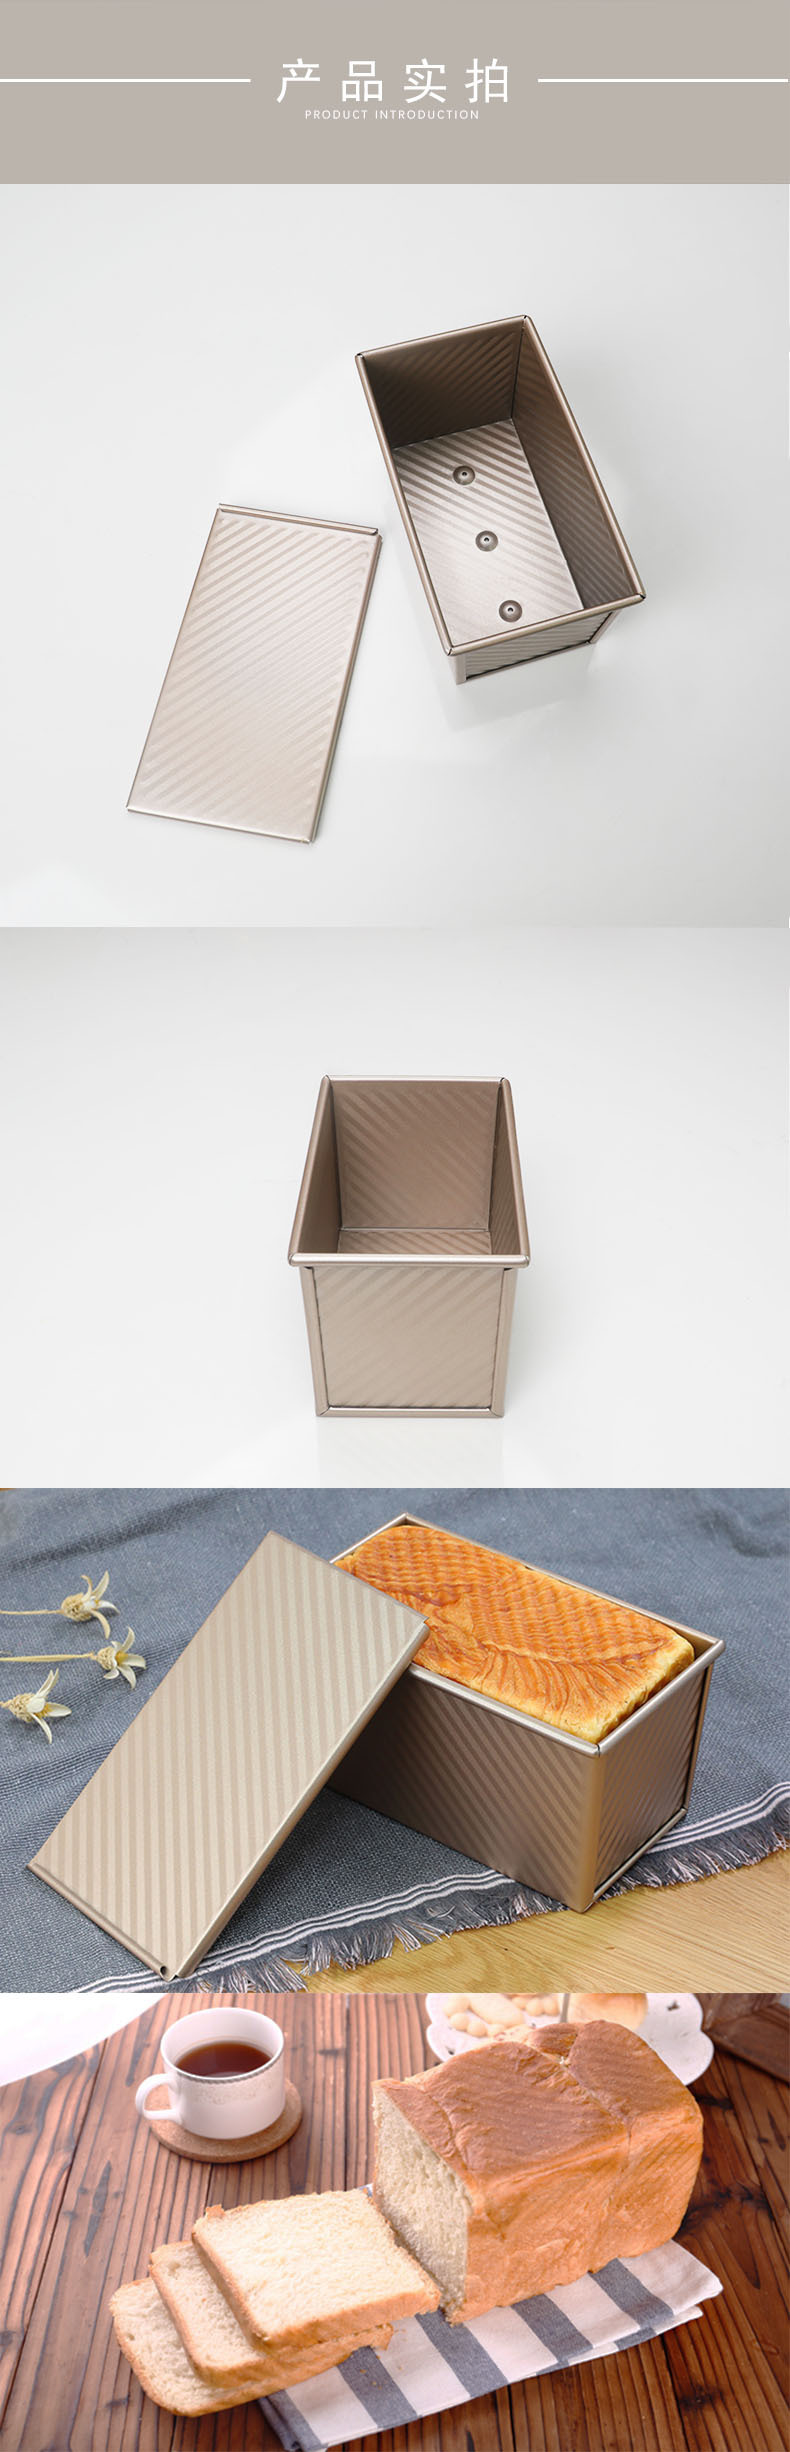 金色碳钢波纹带盖吐司盒烘焙工具面包模具吐司盒土司烘焙蛋糕模具详情54